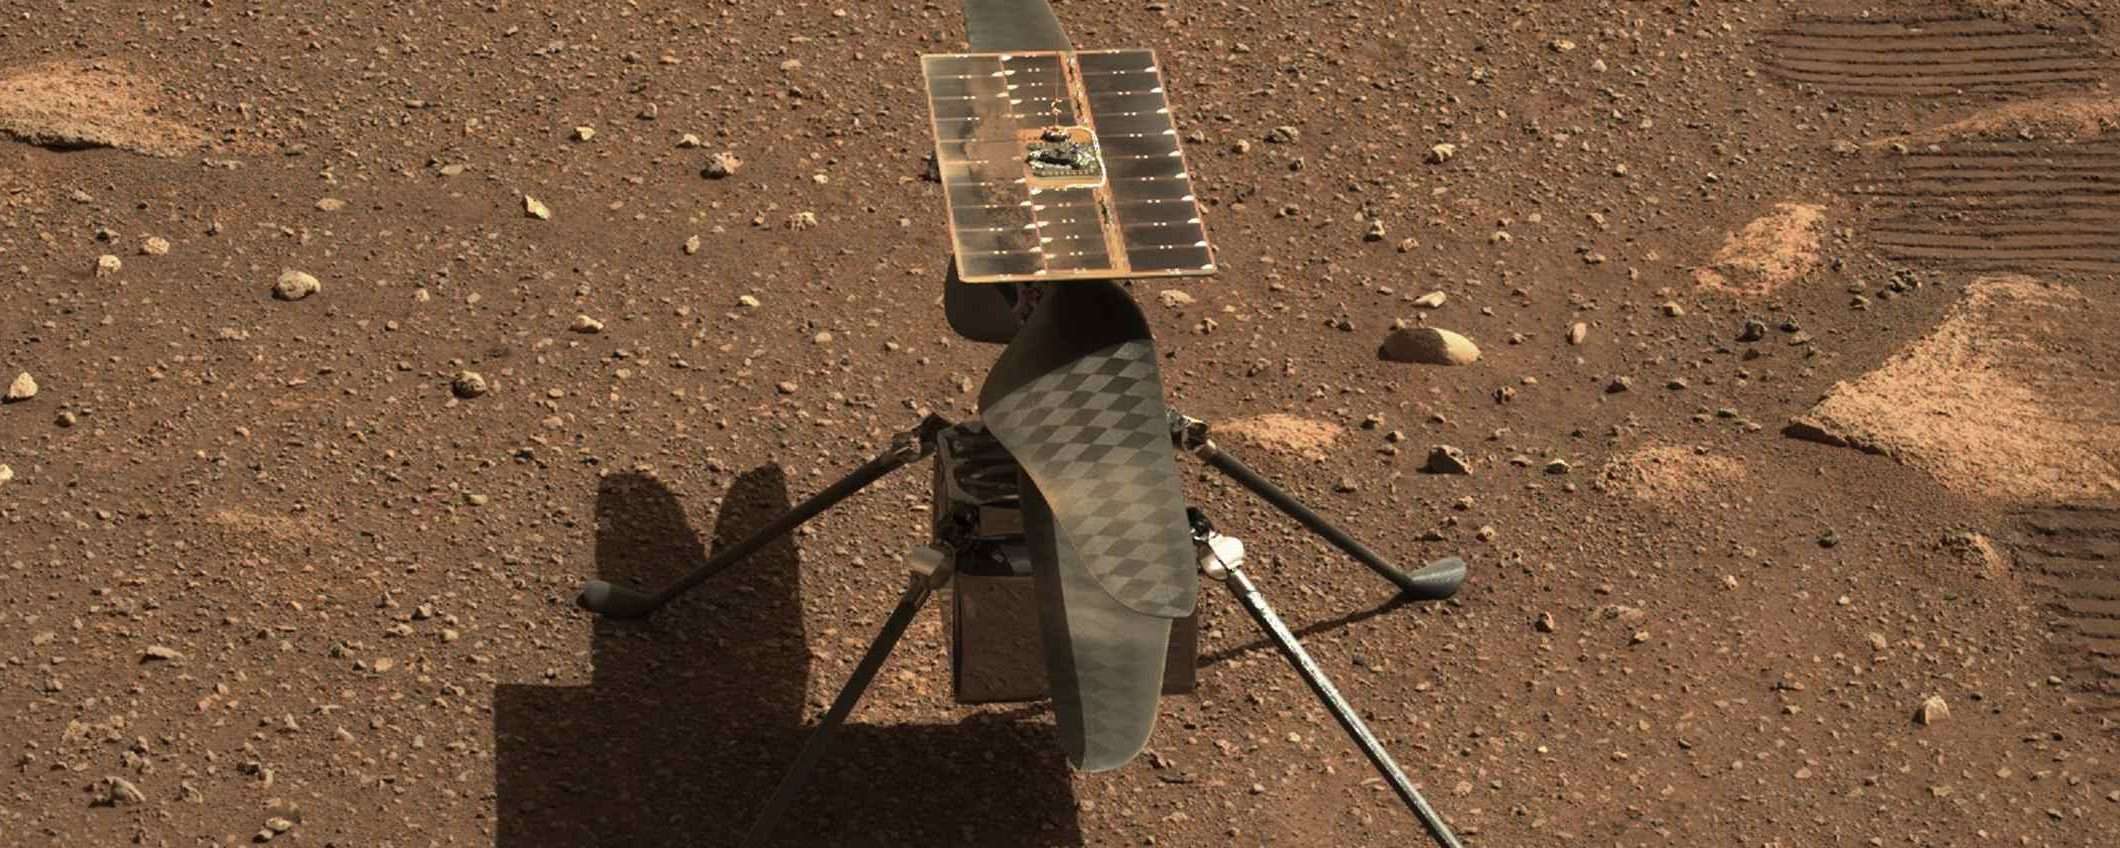 Ingenuity vola su Marte per la 31esima volta